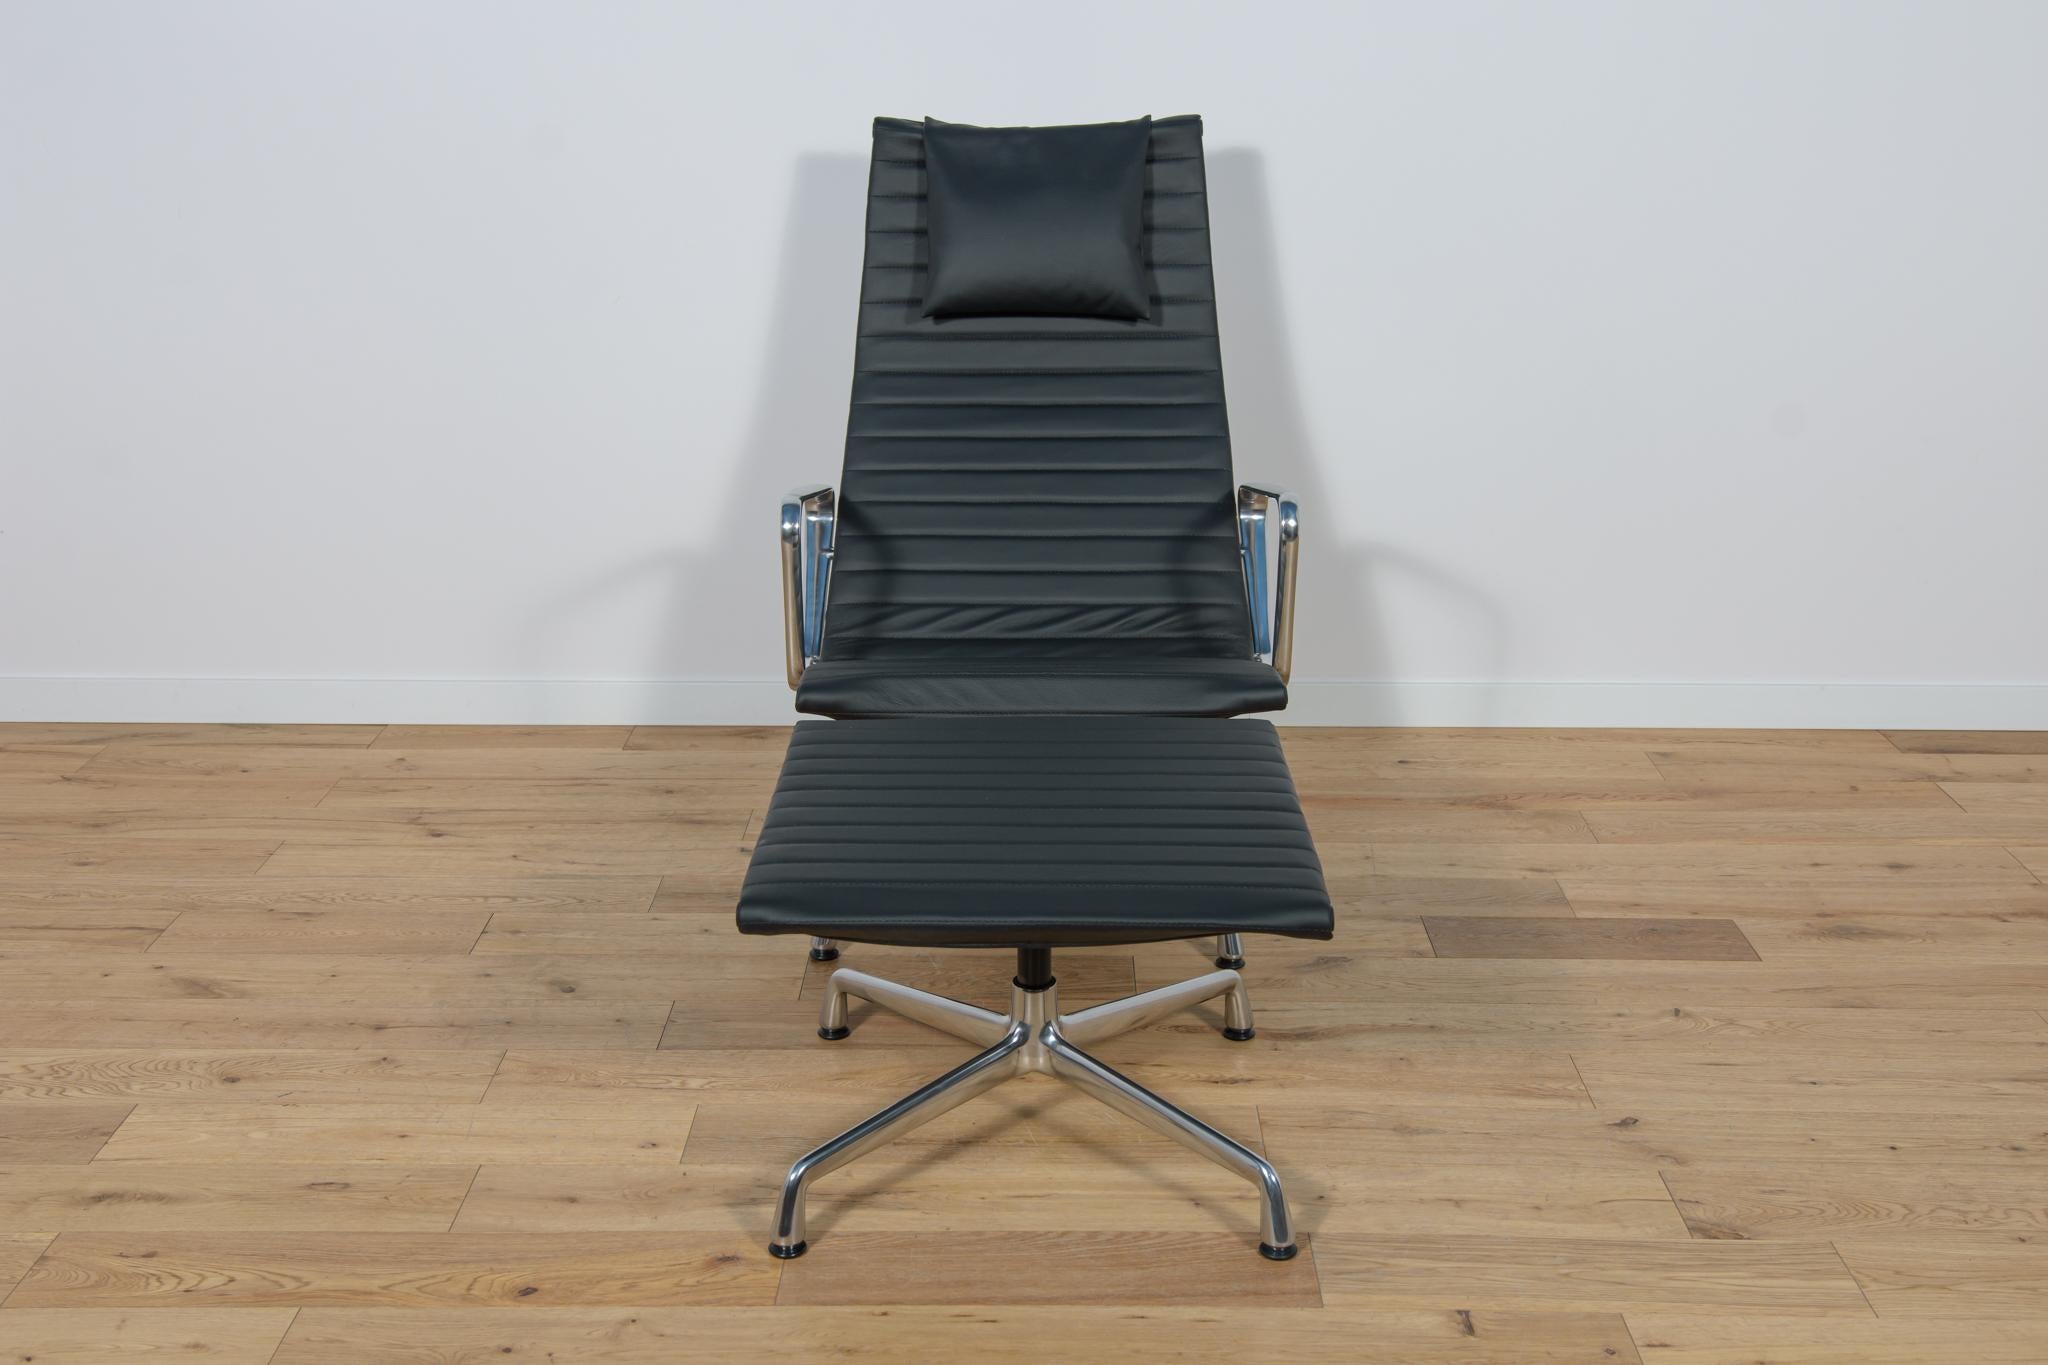 Le fauteuil et le pouf en aluminium EA124 & EA125 constituent l'un des plus grands designs de meubles du 20e siècle. Charles et Ray Eames ont conçu le fauteuil et le pouf en 1958 pour la résidence privée de l'industriel J. Irwin Miller. Lors de la